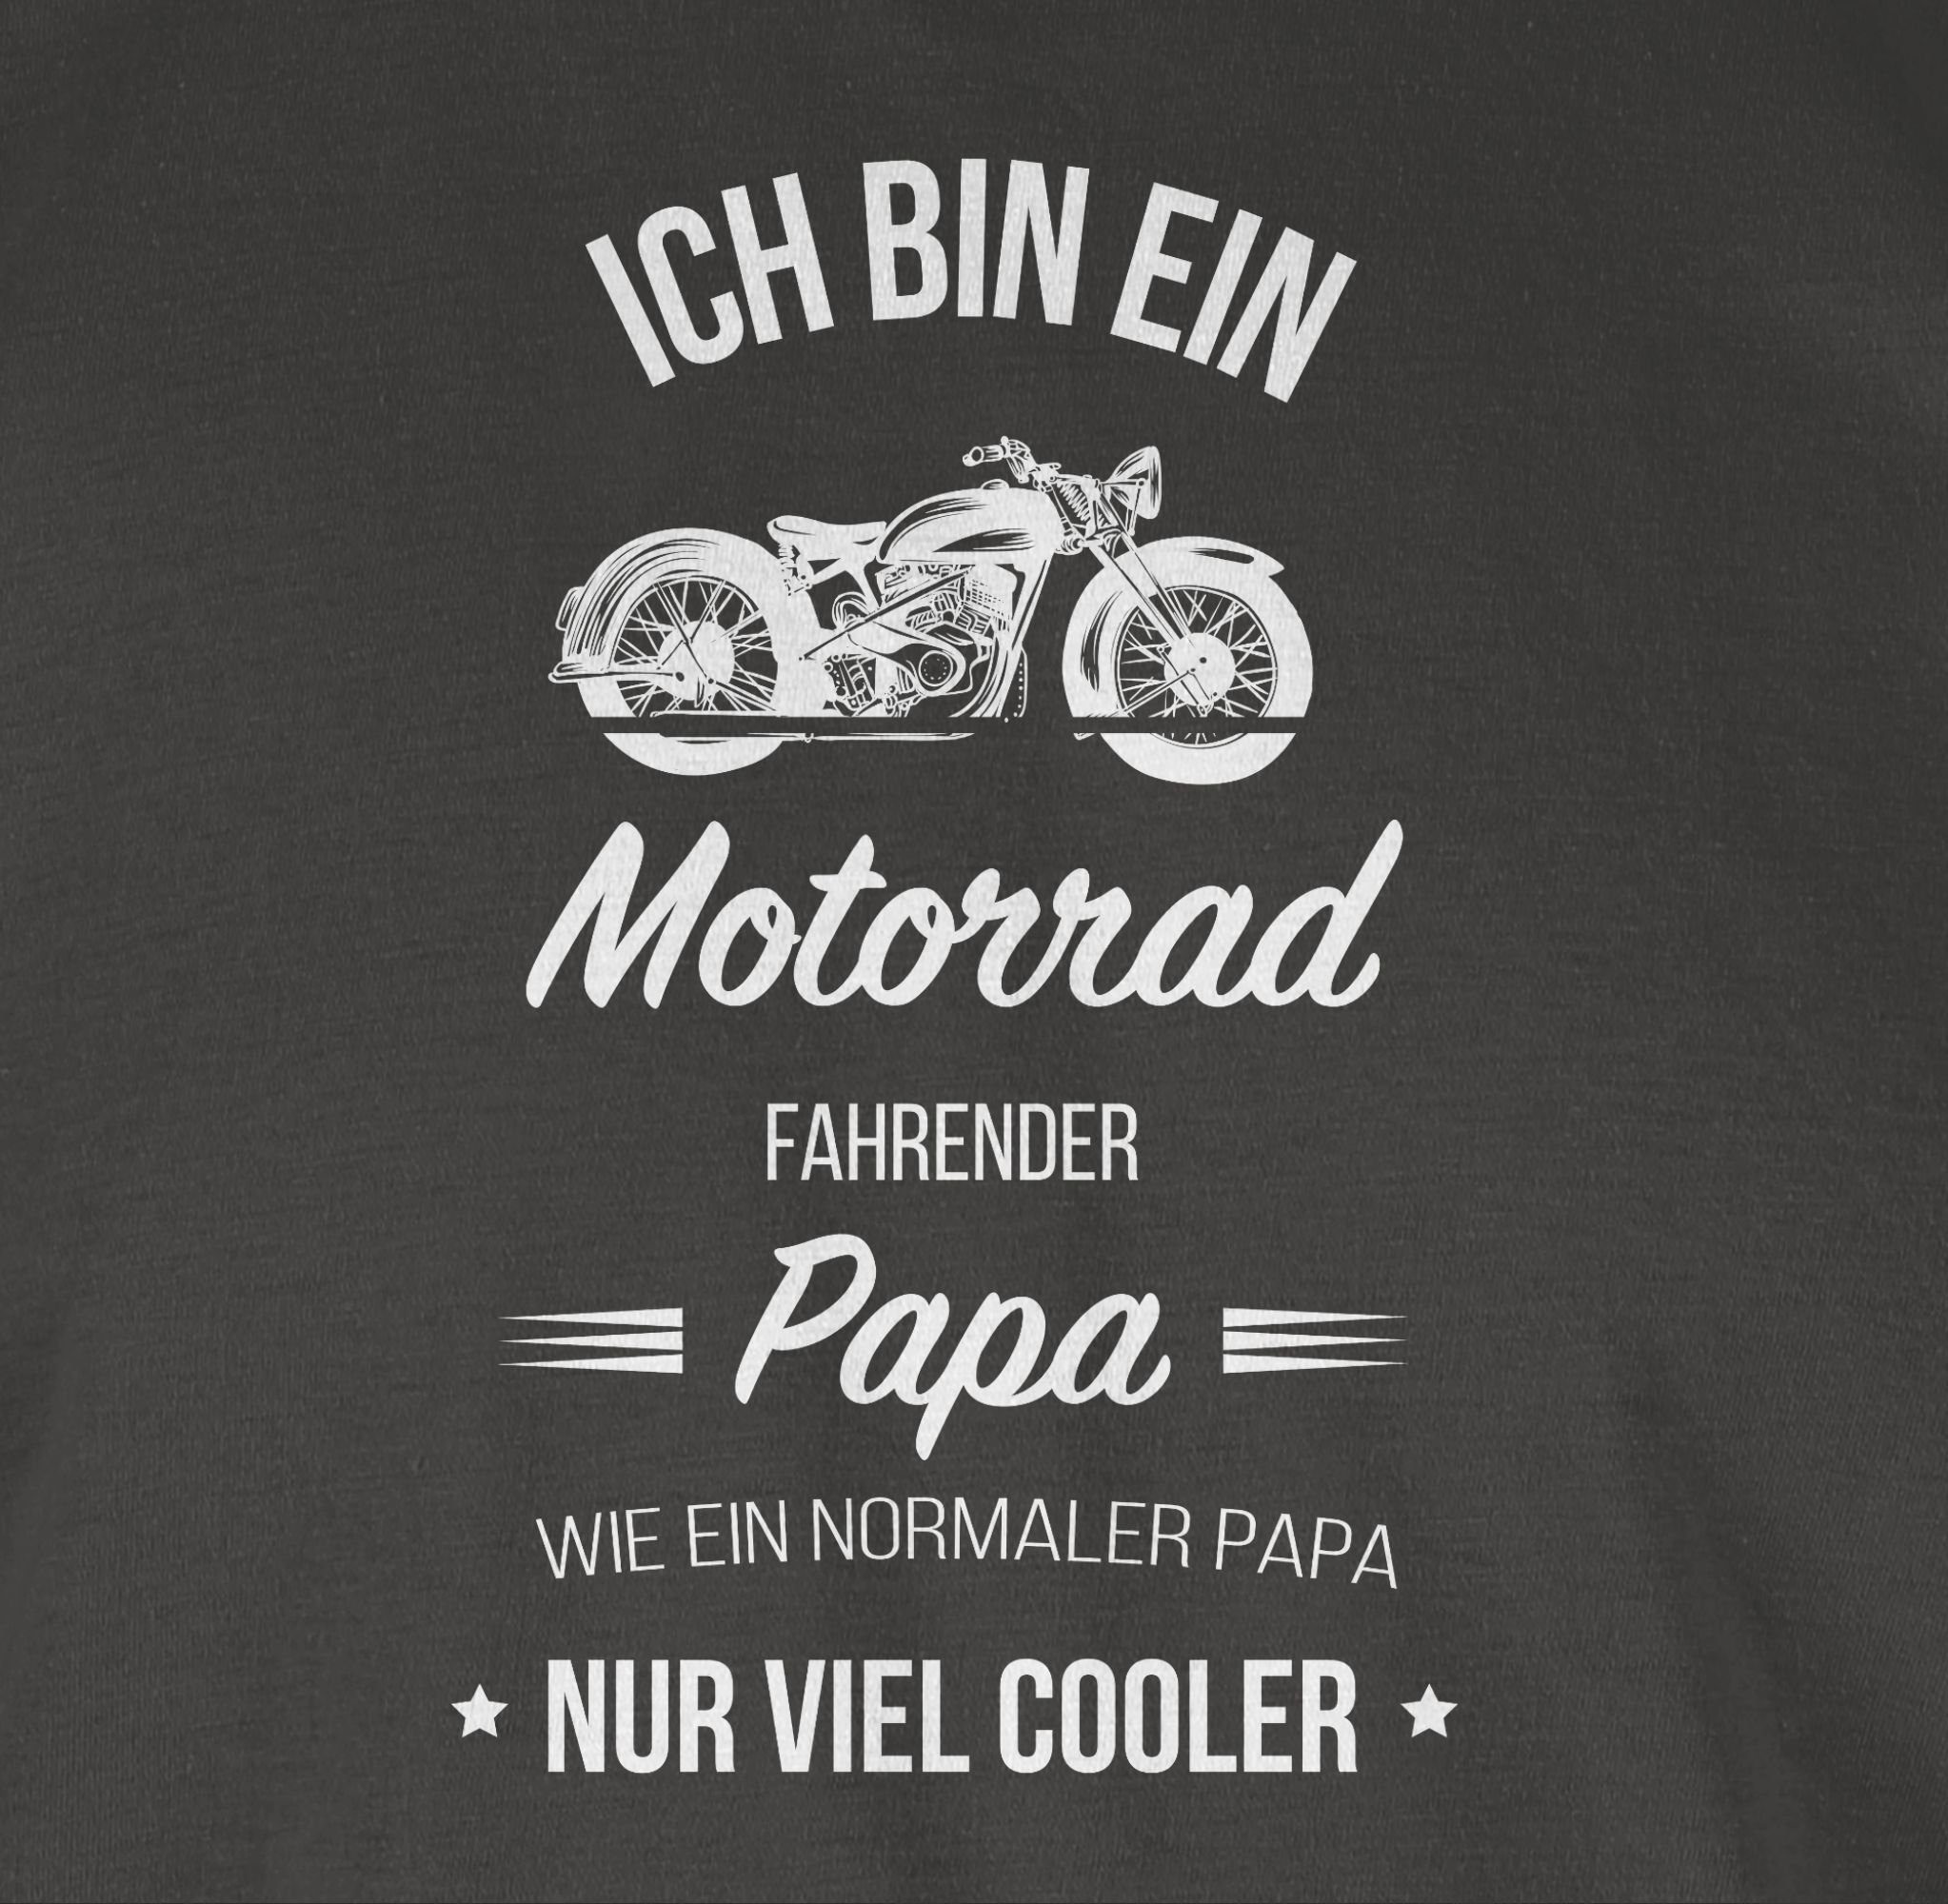 Motorrad Shirtracer bin Papa für Vatertag Dunkelgrau Ich ein Papa fahrender 03 Geschenk T-Shirt